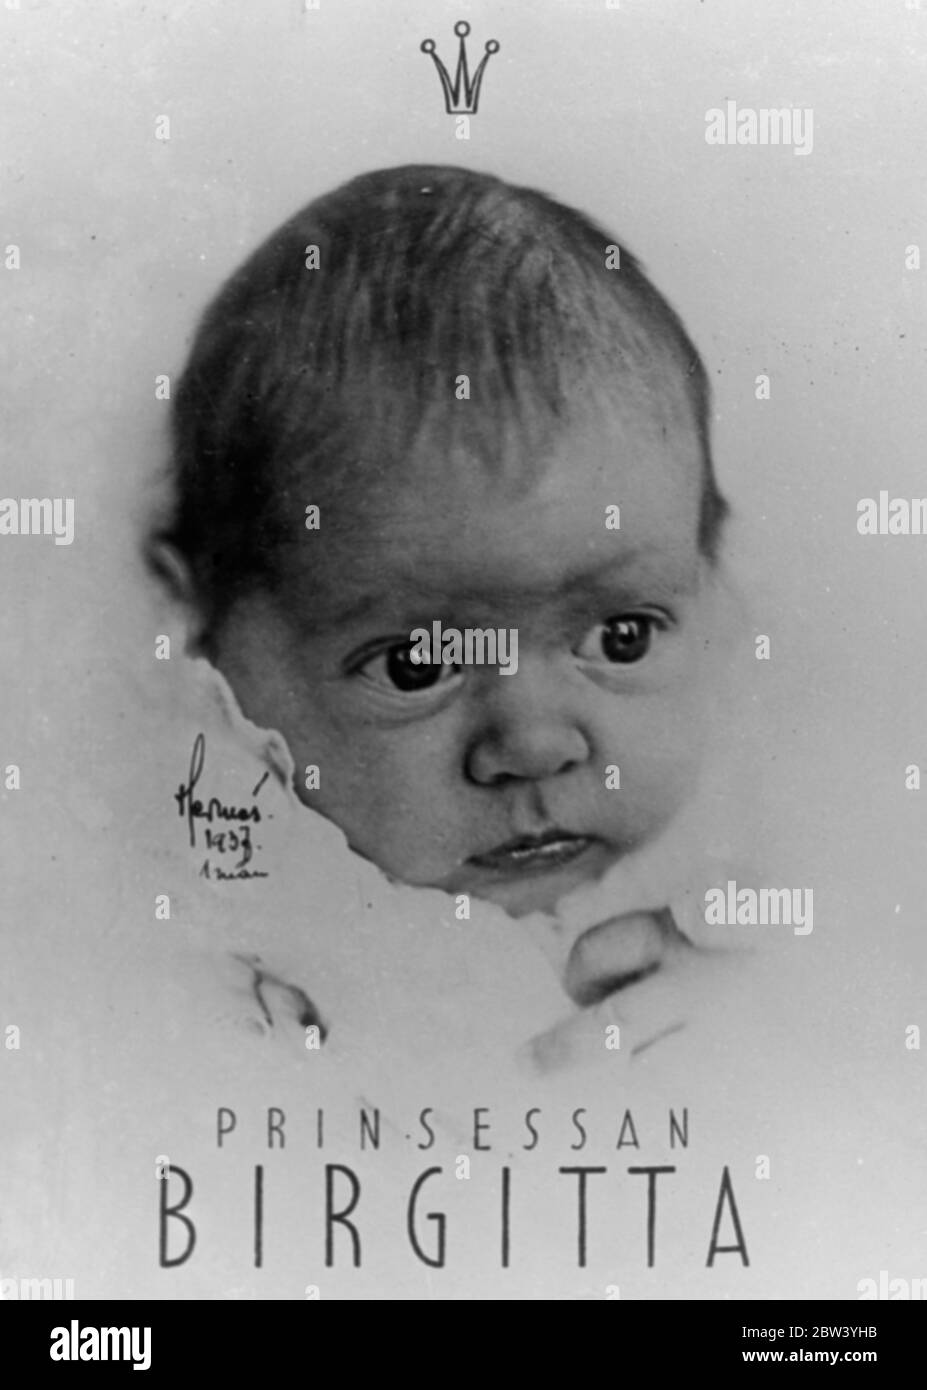 La princesse de Suède - nouvelle photo. Photos: Le bébé royal à grand œil de Suède - la princesse Birgitta - la fille d'un mois du prince Gustav Adolf et de la princesse Sibylla. 25 février 1937 Banque D'Images